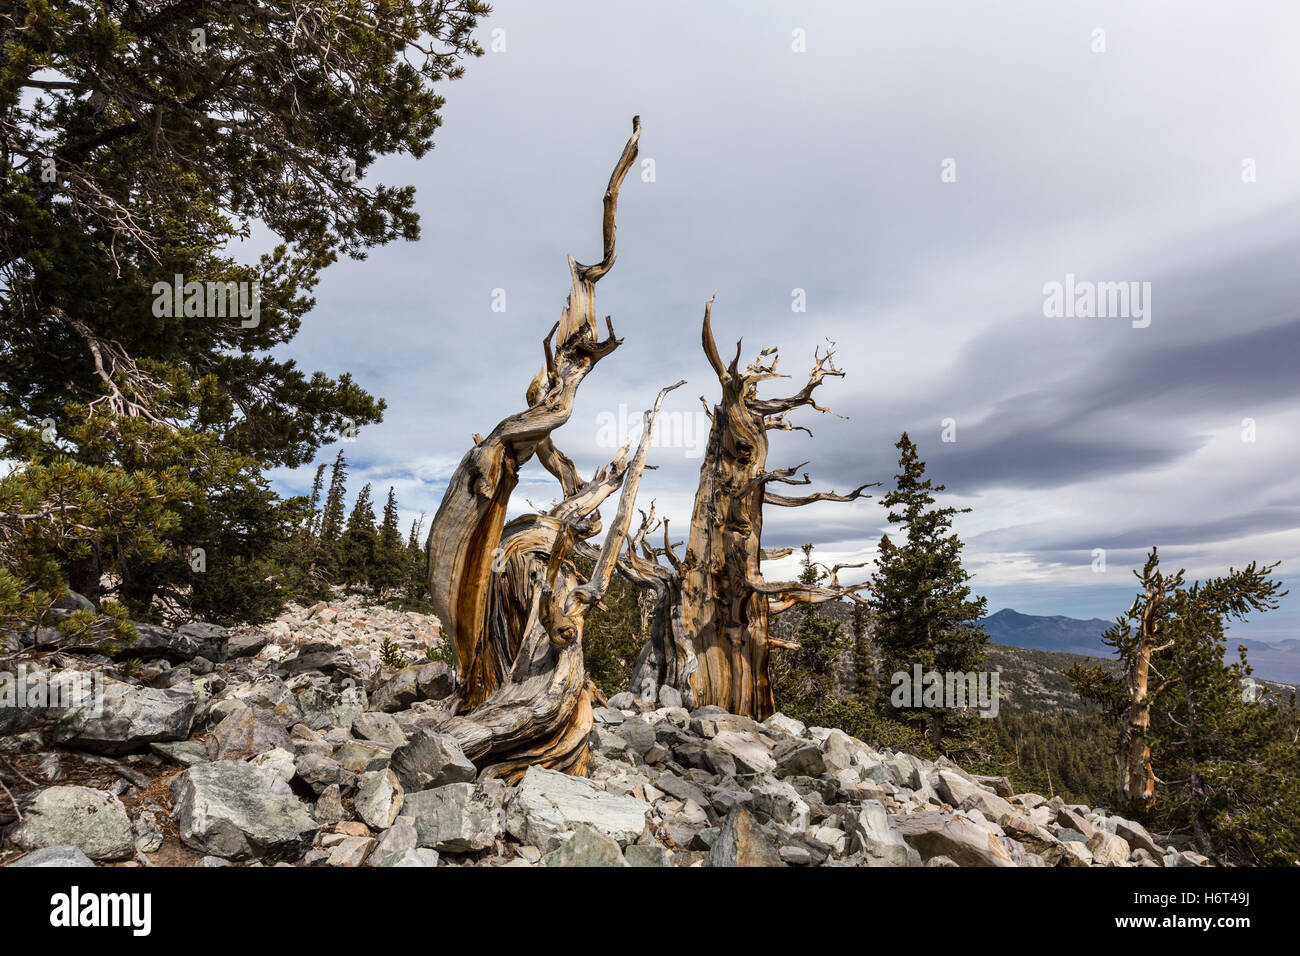 Antichi Pini Bristlecone nel Parco nazionale Great Basin nel Nevada settentrionale. Bristlecone Pines sono gli alberi più vecchi del mondo. Foto Stock